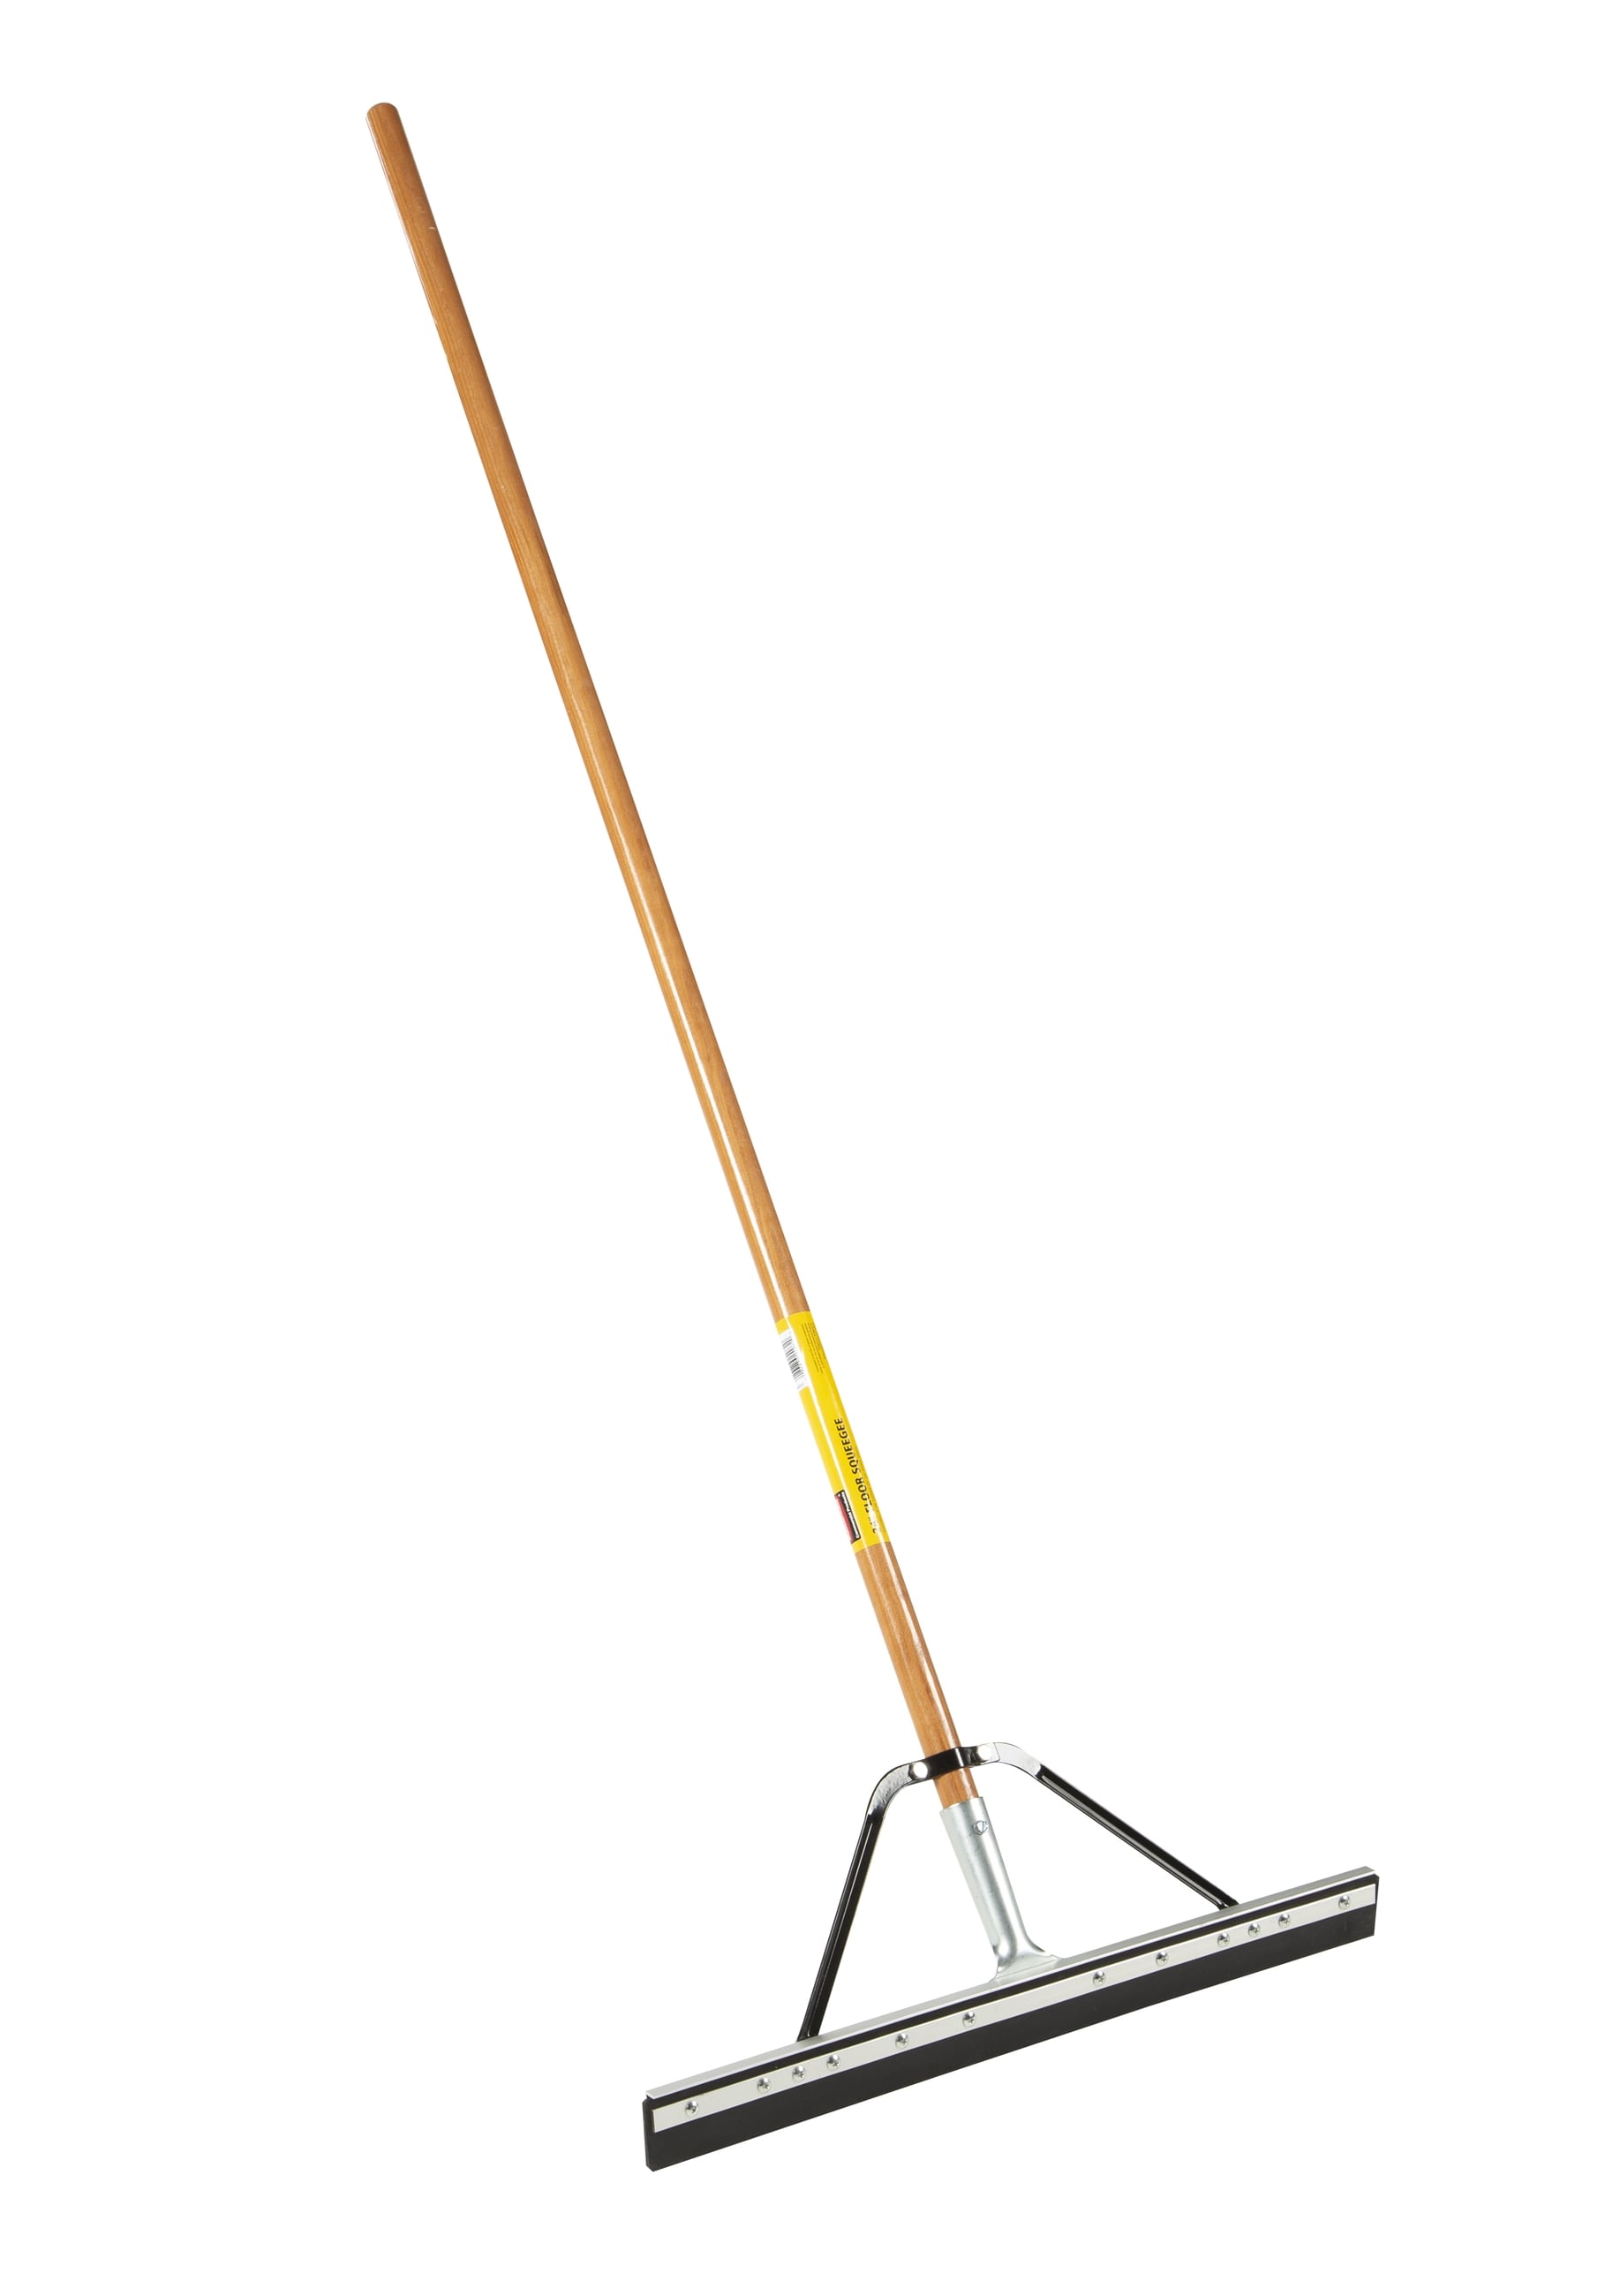 Floor Squeegee Rubber Mop Head Handle Large Industrial Wet Wiper Blade  Shower